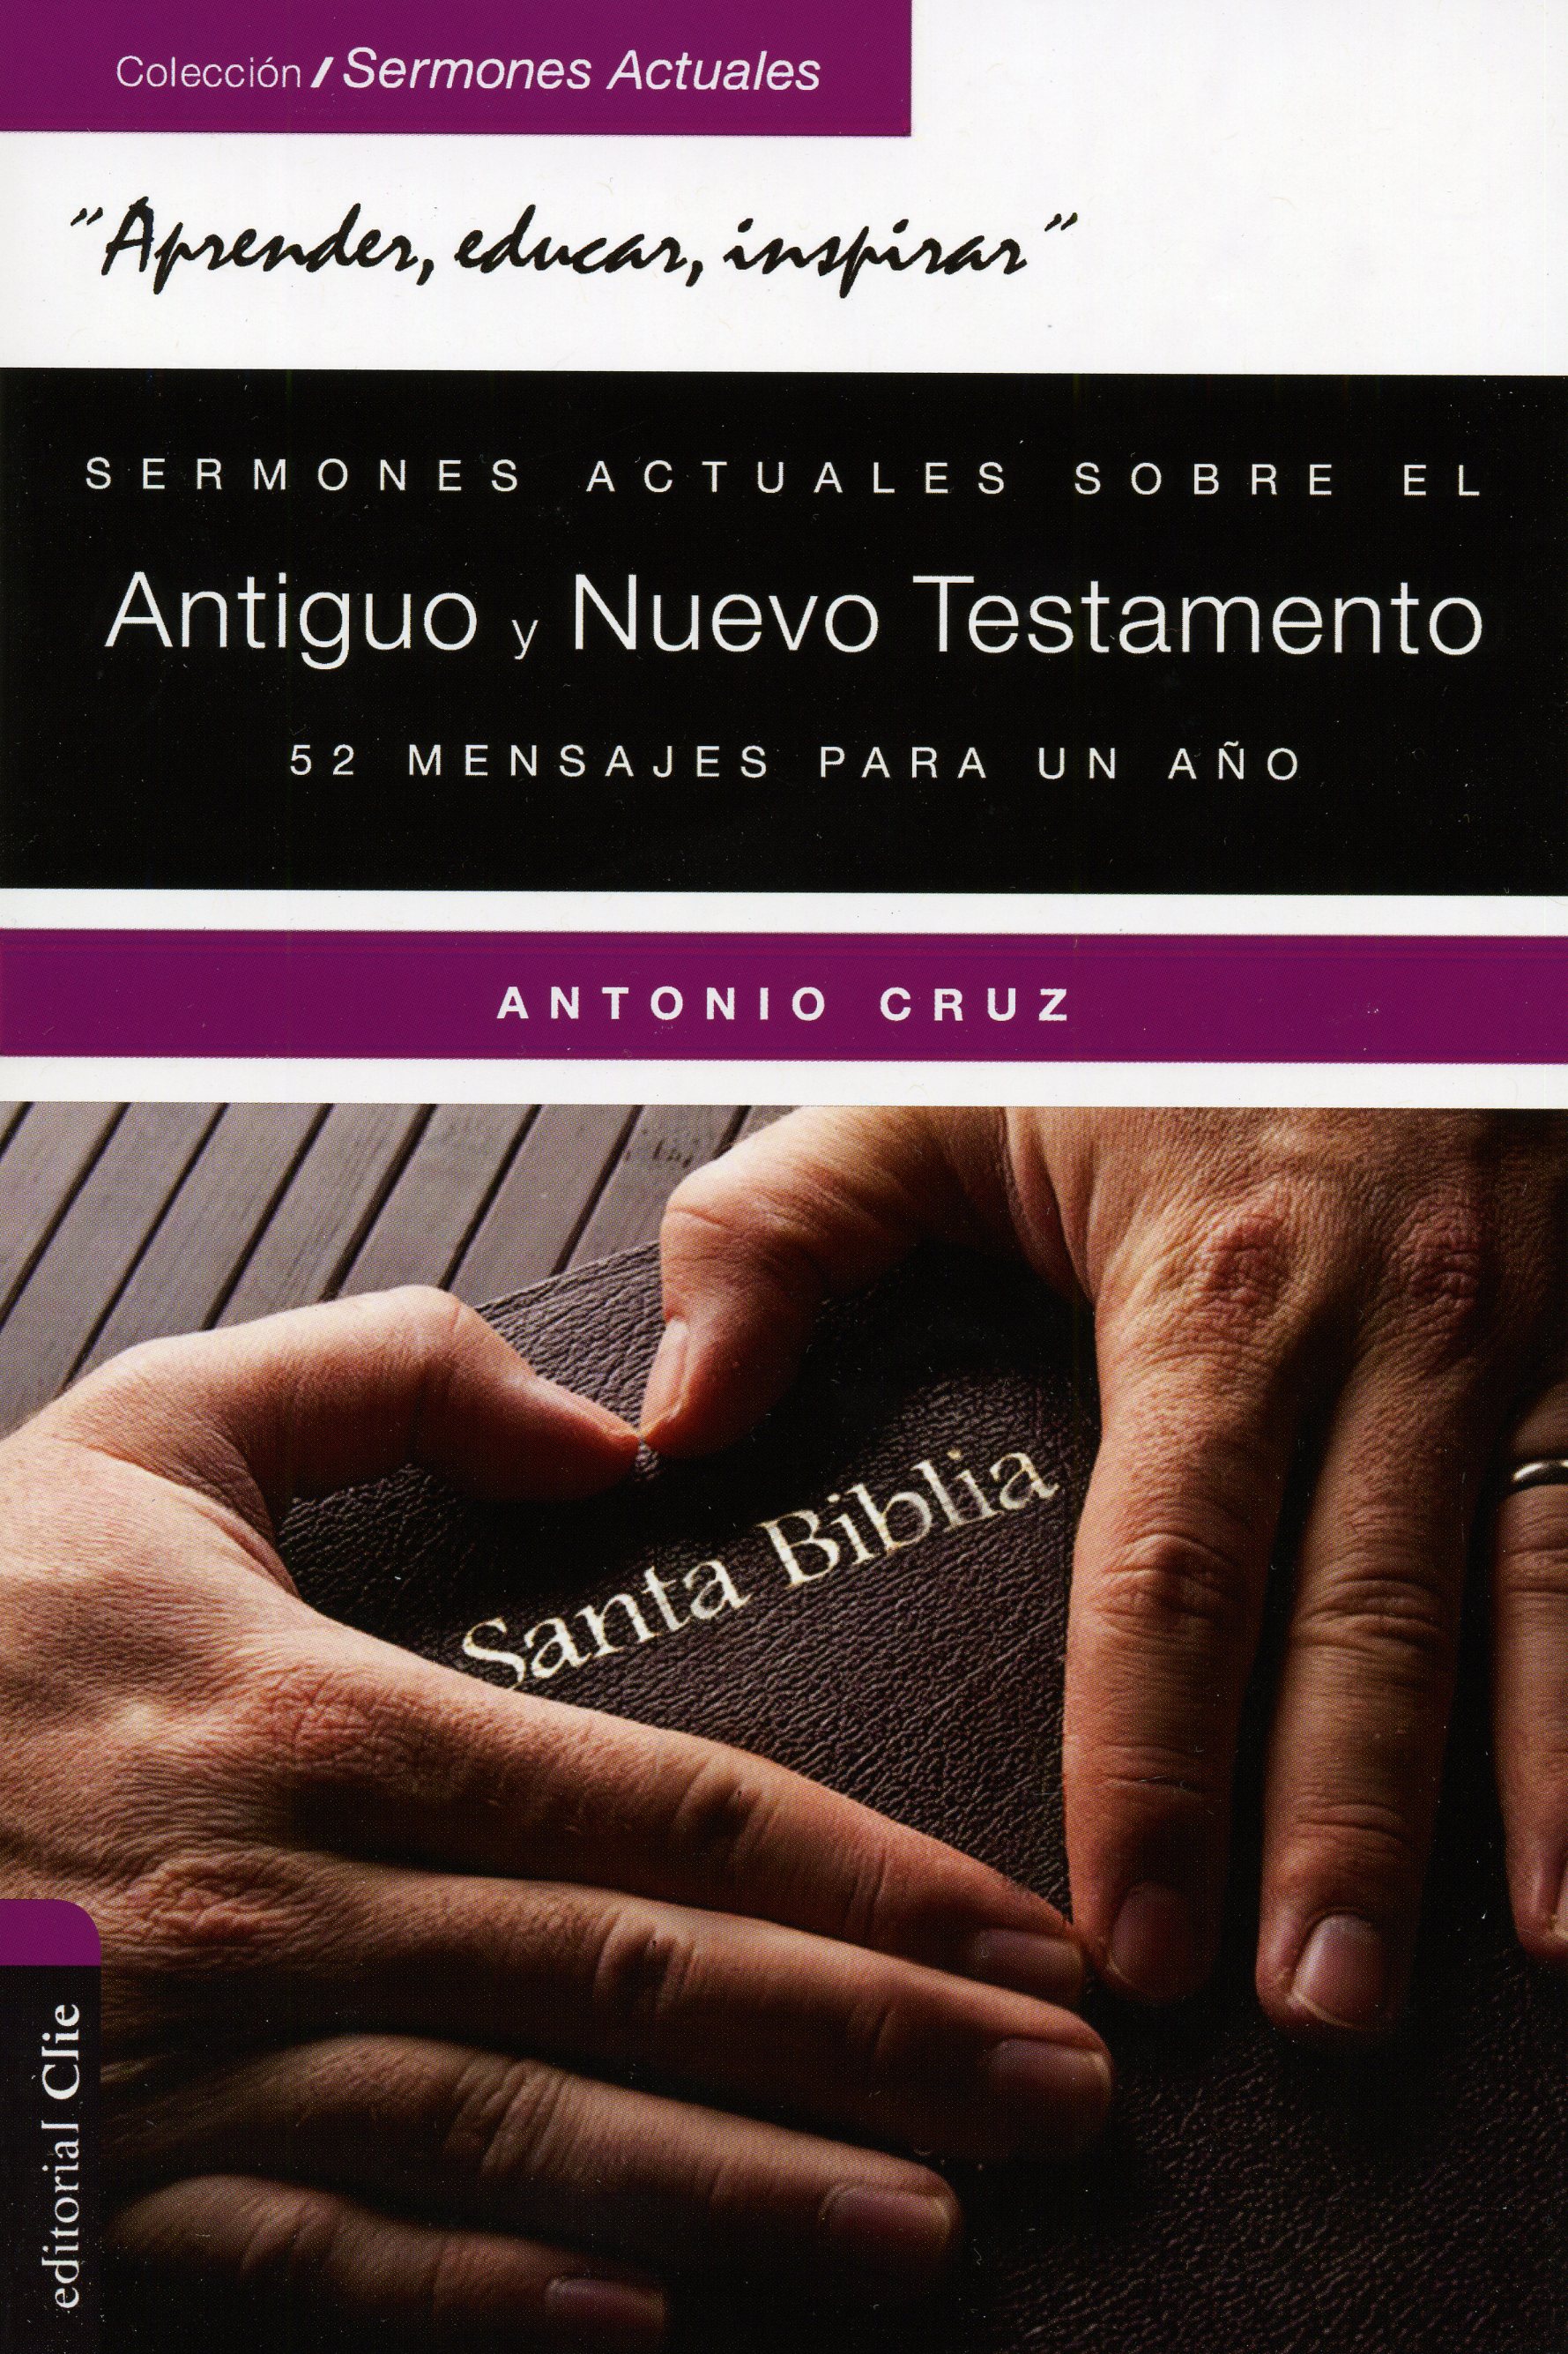 Sermones Actuales Sobre El Antiguo Y El Nuevo Testamento